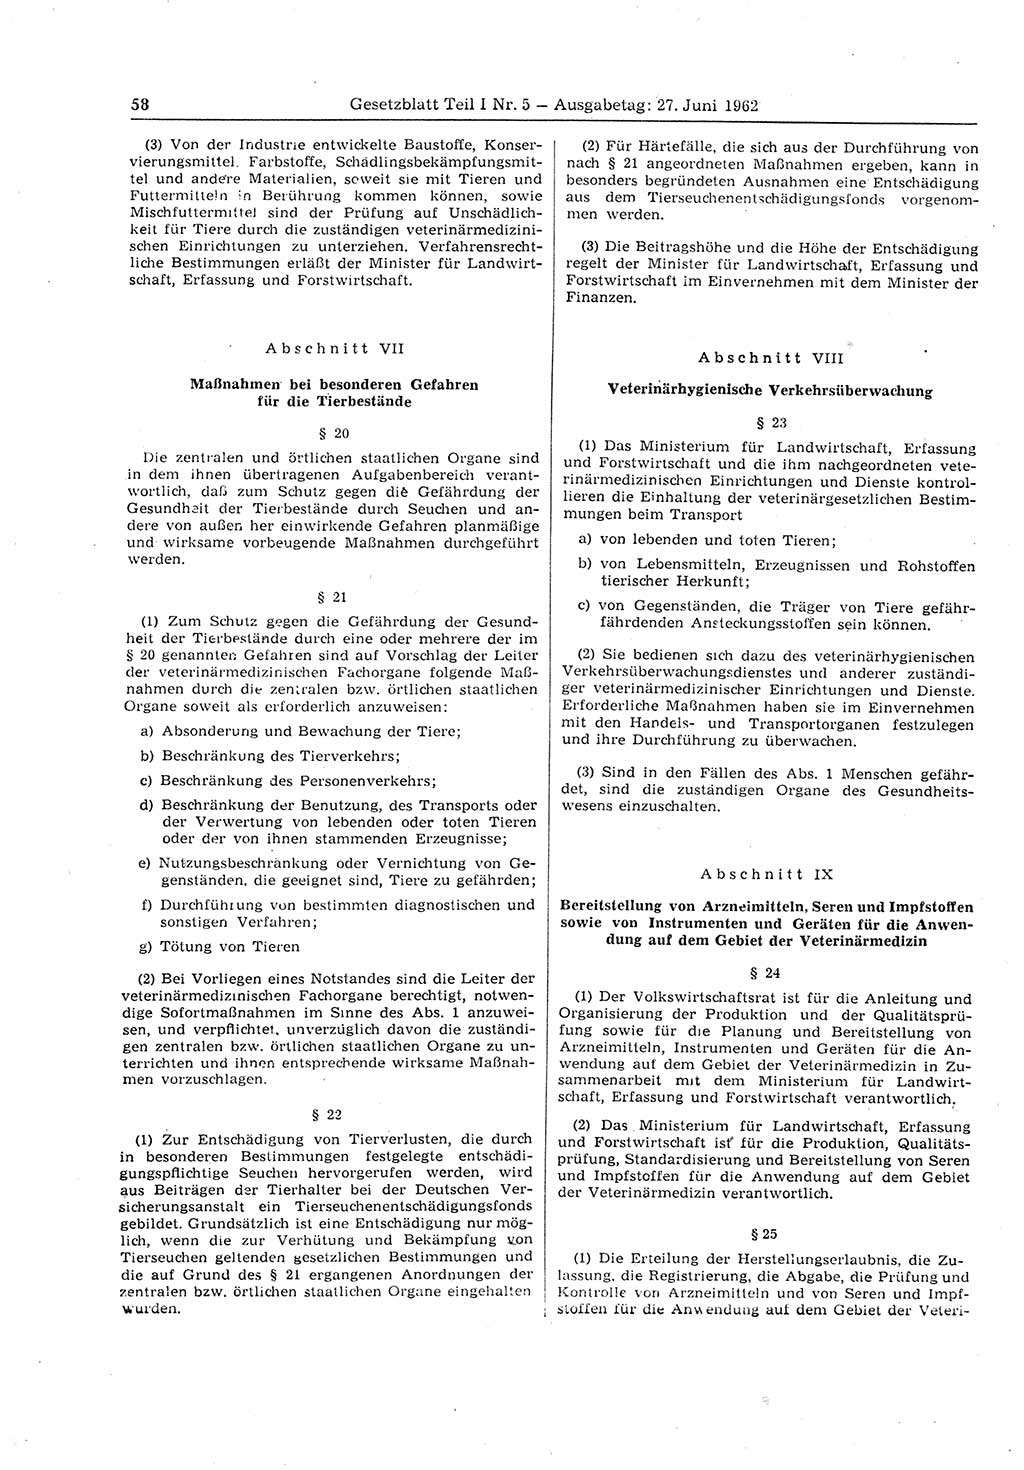 Gesetzblatt (GBl.) der Deutschen Demokratischen Republik (DDR) Teil Ⅰ 1962, Seite 58 (GBl. DDR Ⅰ 1962, S. 58)